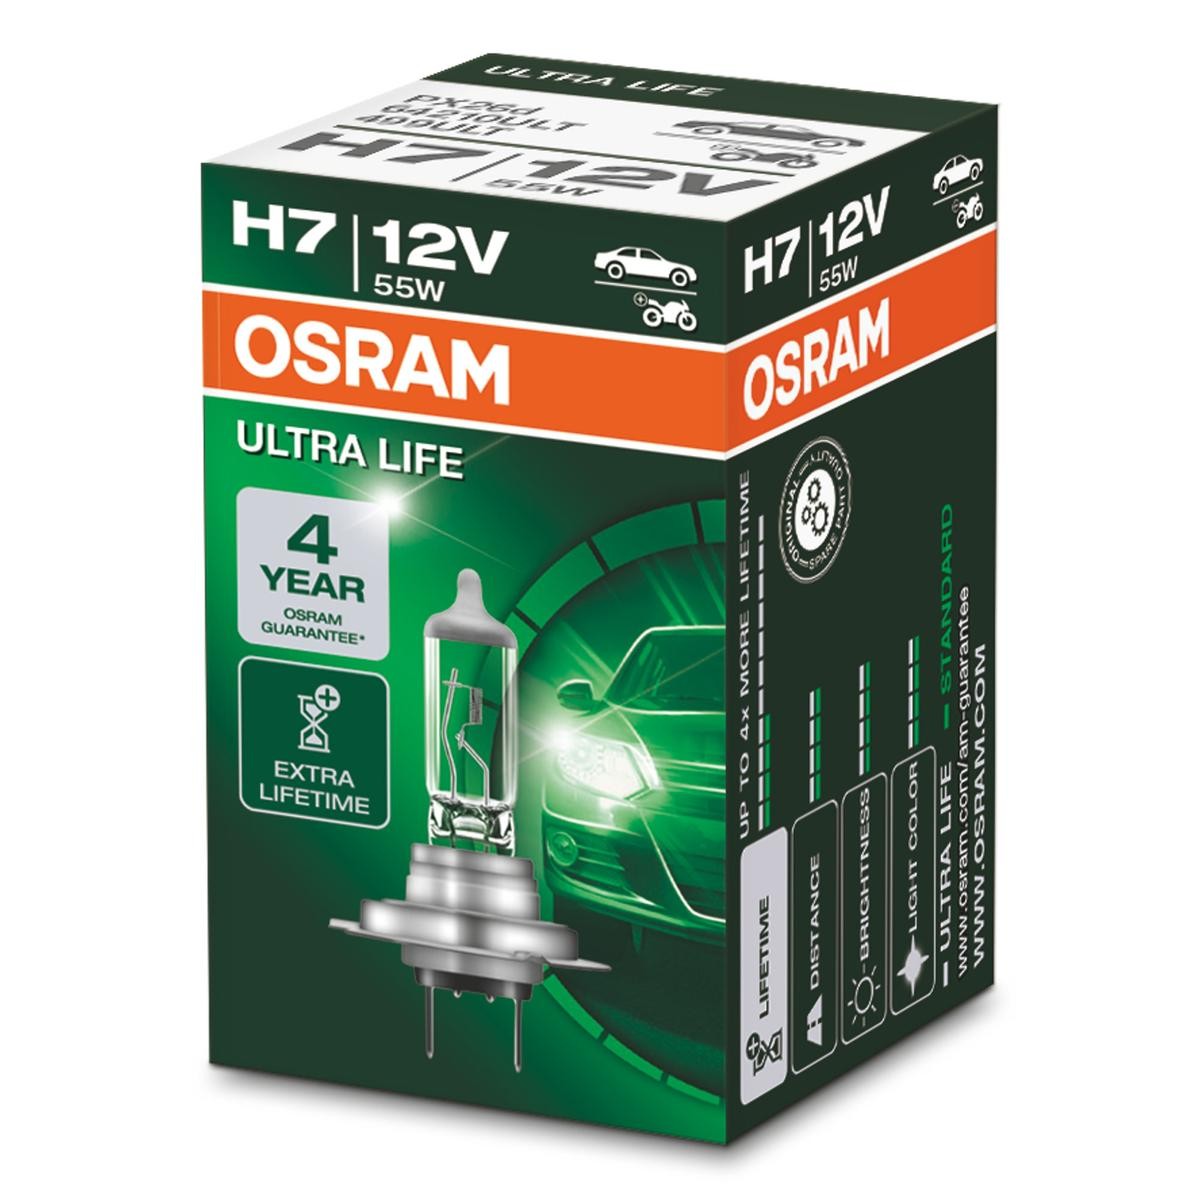 OSRAM ULTRA LIFE 64210ULT Spotlight bulb H7 12V 55W3200K Halogen